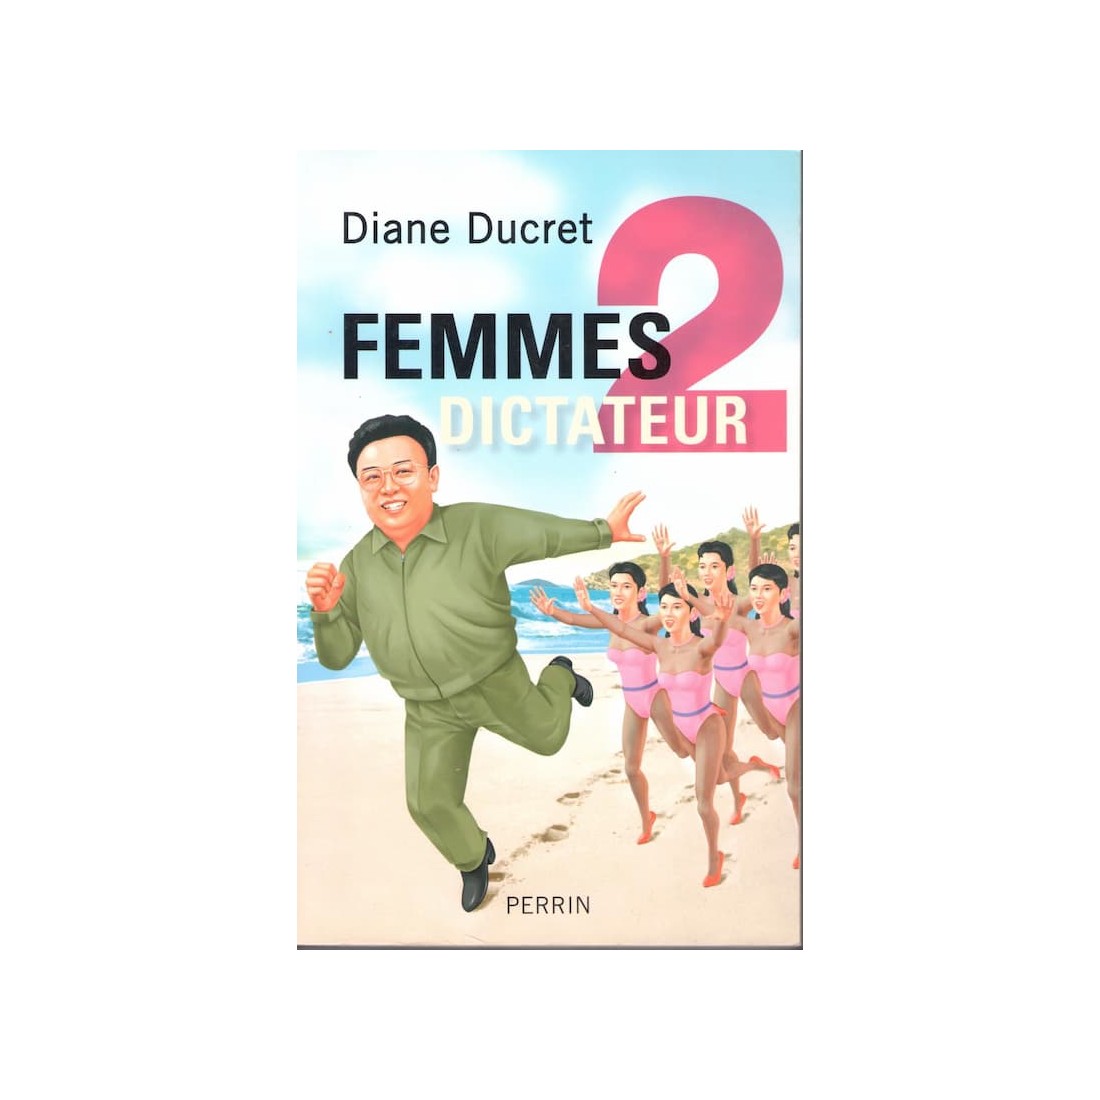 Femmes 2 dictateur - Roman de Diane Ducret - Ocazlivres.com